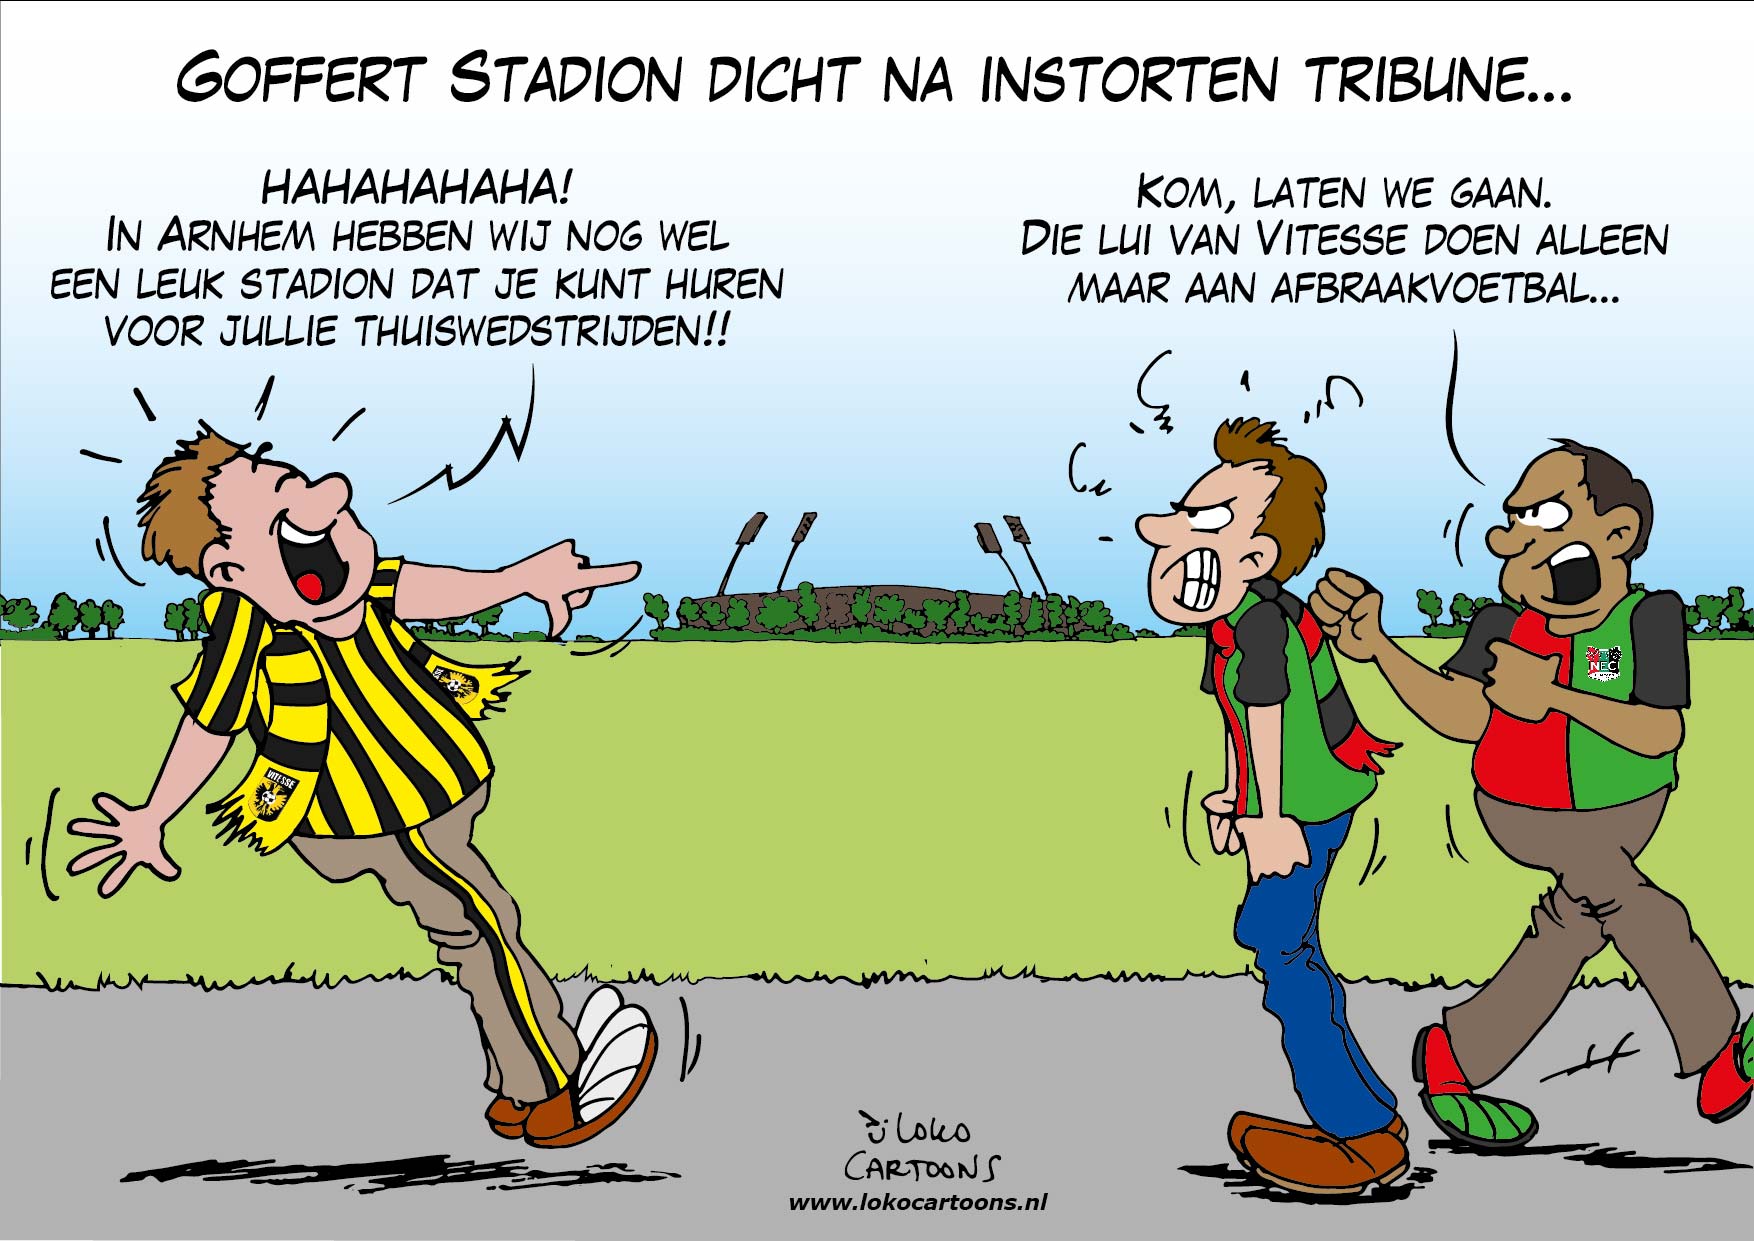 Goffert Stadion dicht na instorten tribune…